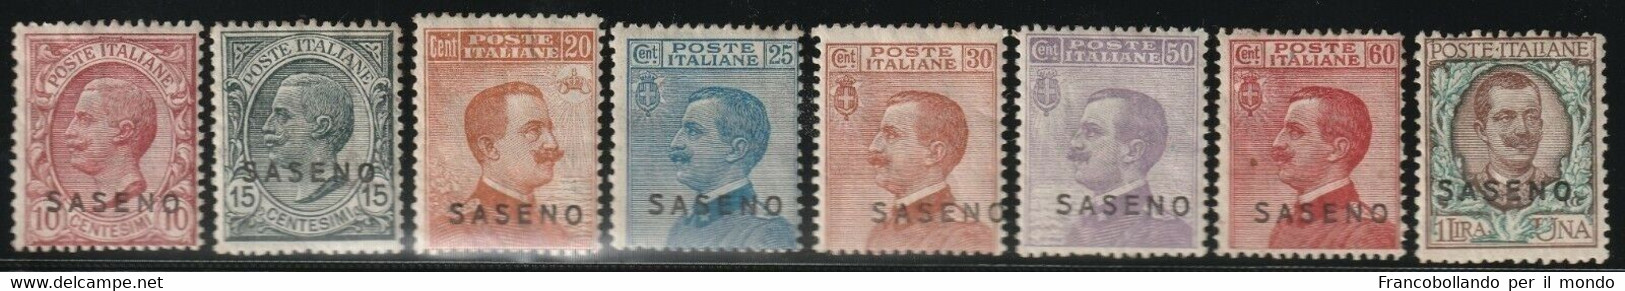 REGNO D'ITALIA COLONIE  POSSEDIMENTI 1923  SERIE COMPLETA DEI FRANCOBOLLI D'ITALIA 1901-22 SOPRASTAMPATI SASENO MNH - Saseno